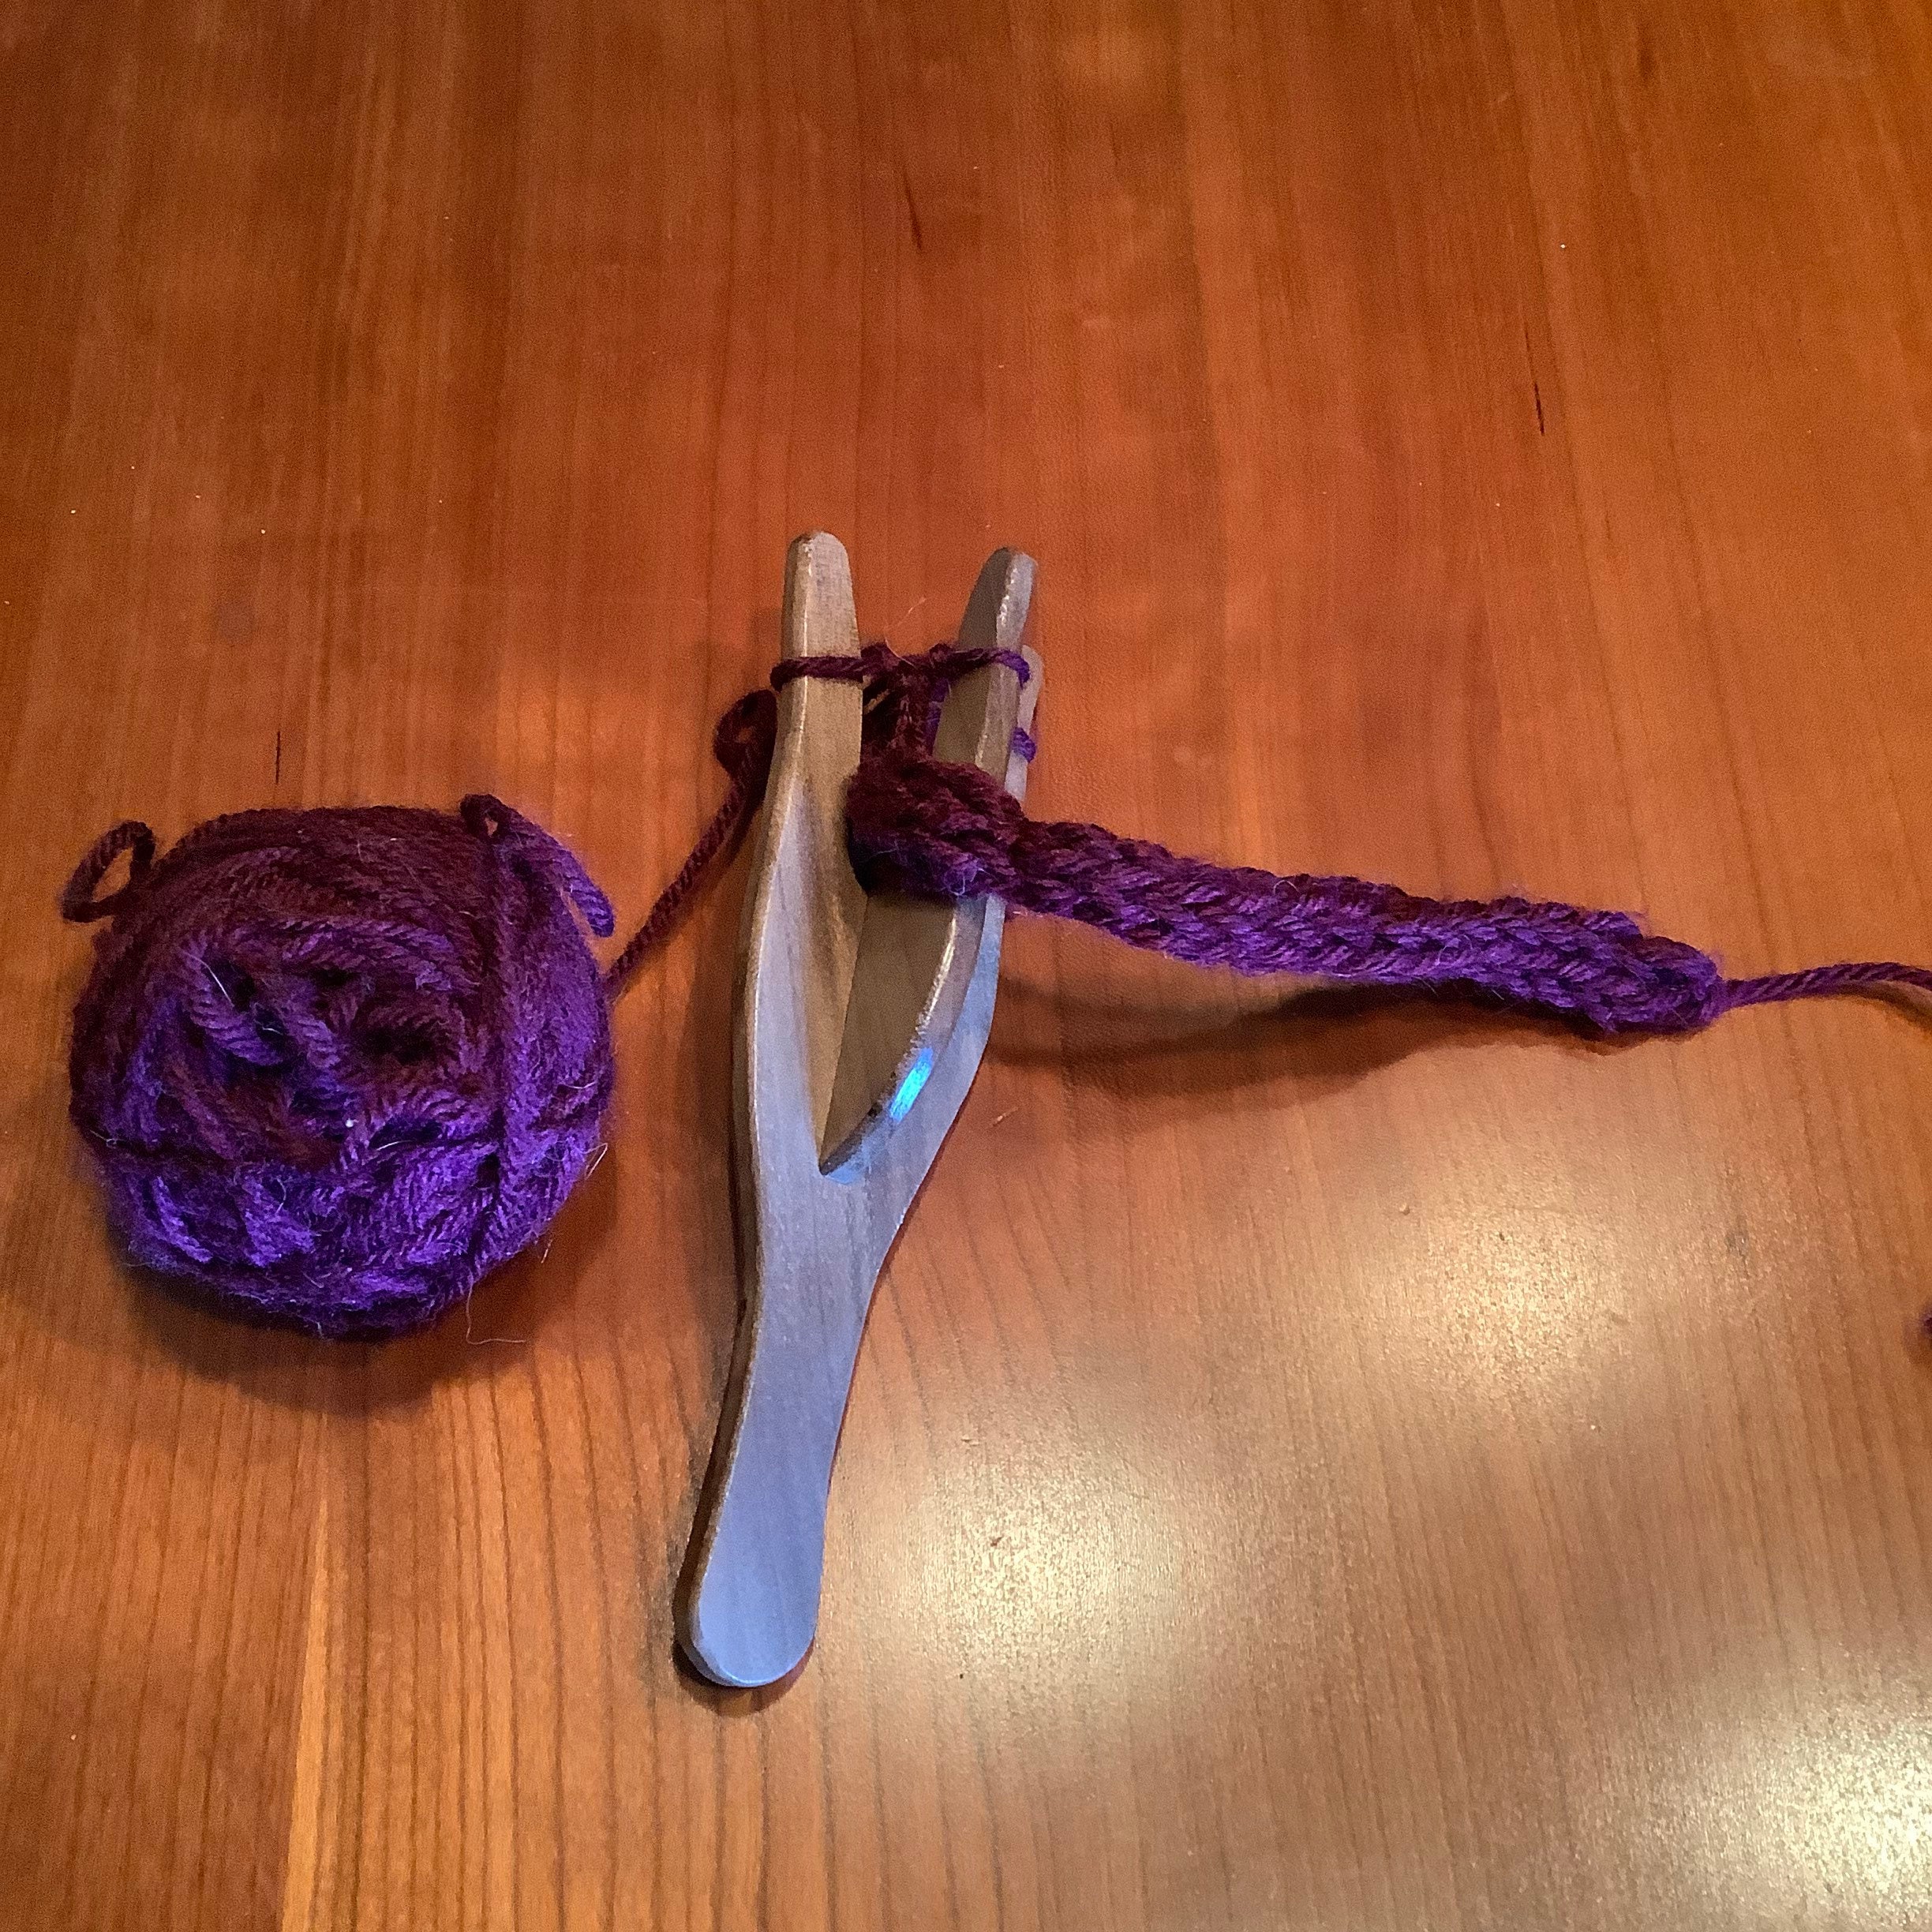 Lucet, Knitting Fork, Weaving Fork, Cord Making, Wooden Lucet Fork, Small  Lucet, Viking Weaving, Cord Braiding, Braiding Tool 